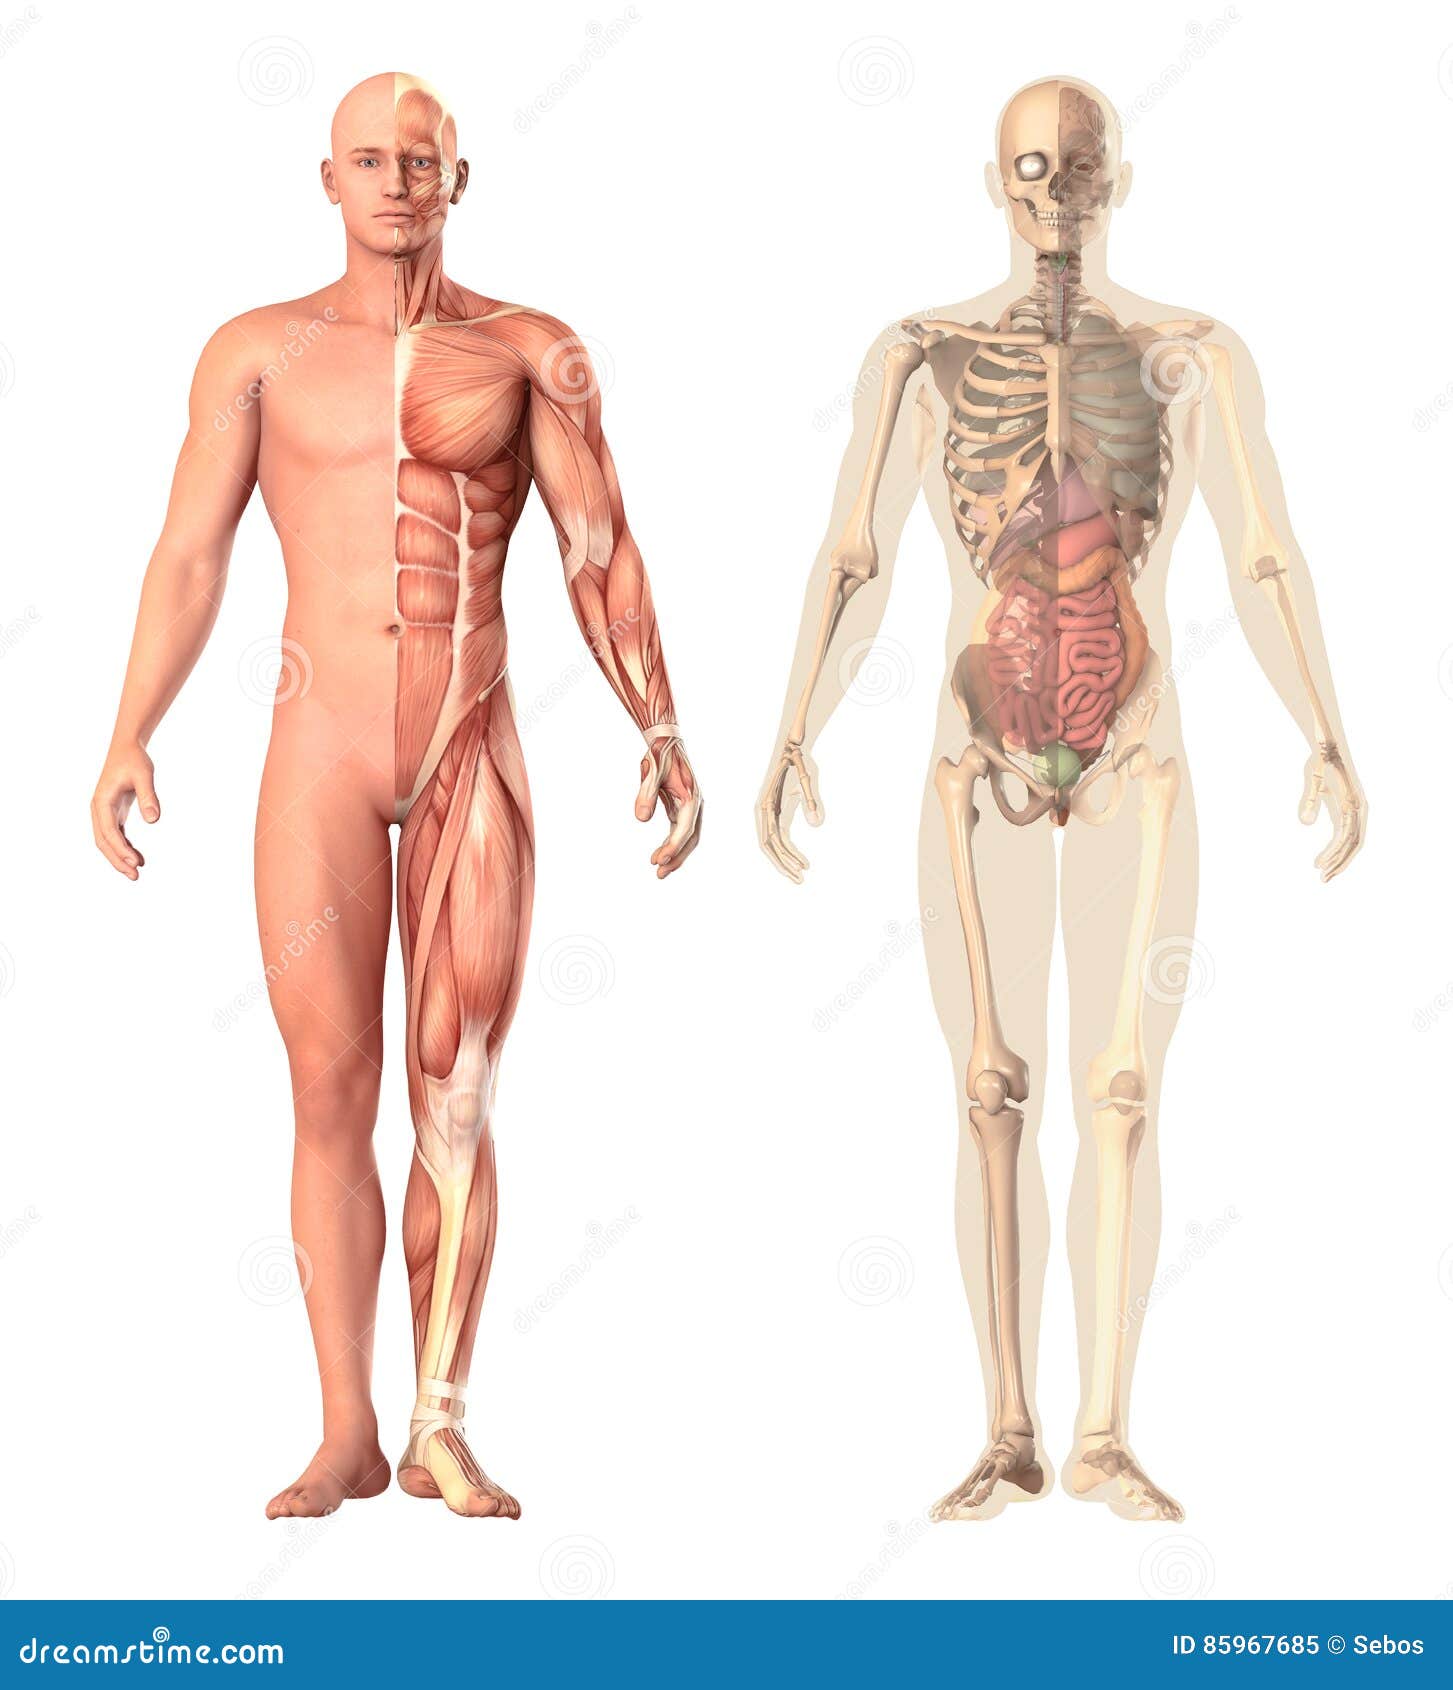 MagiDeal Männlichen Muskel Skelett Anatomie Modell Menschliche Anatomie 